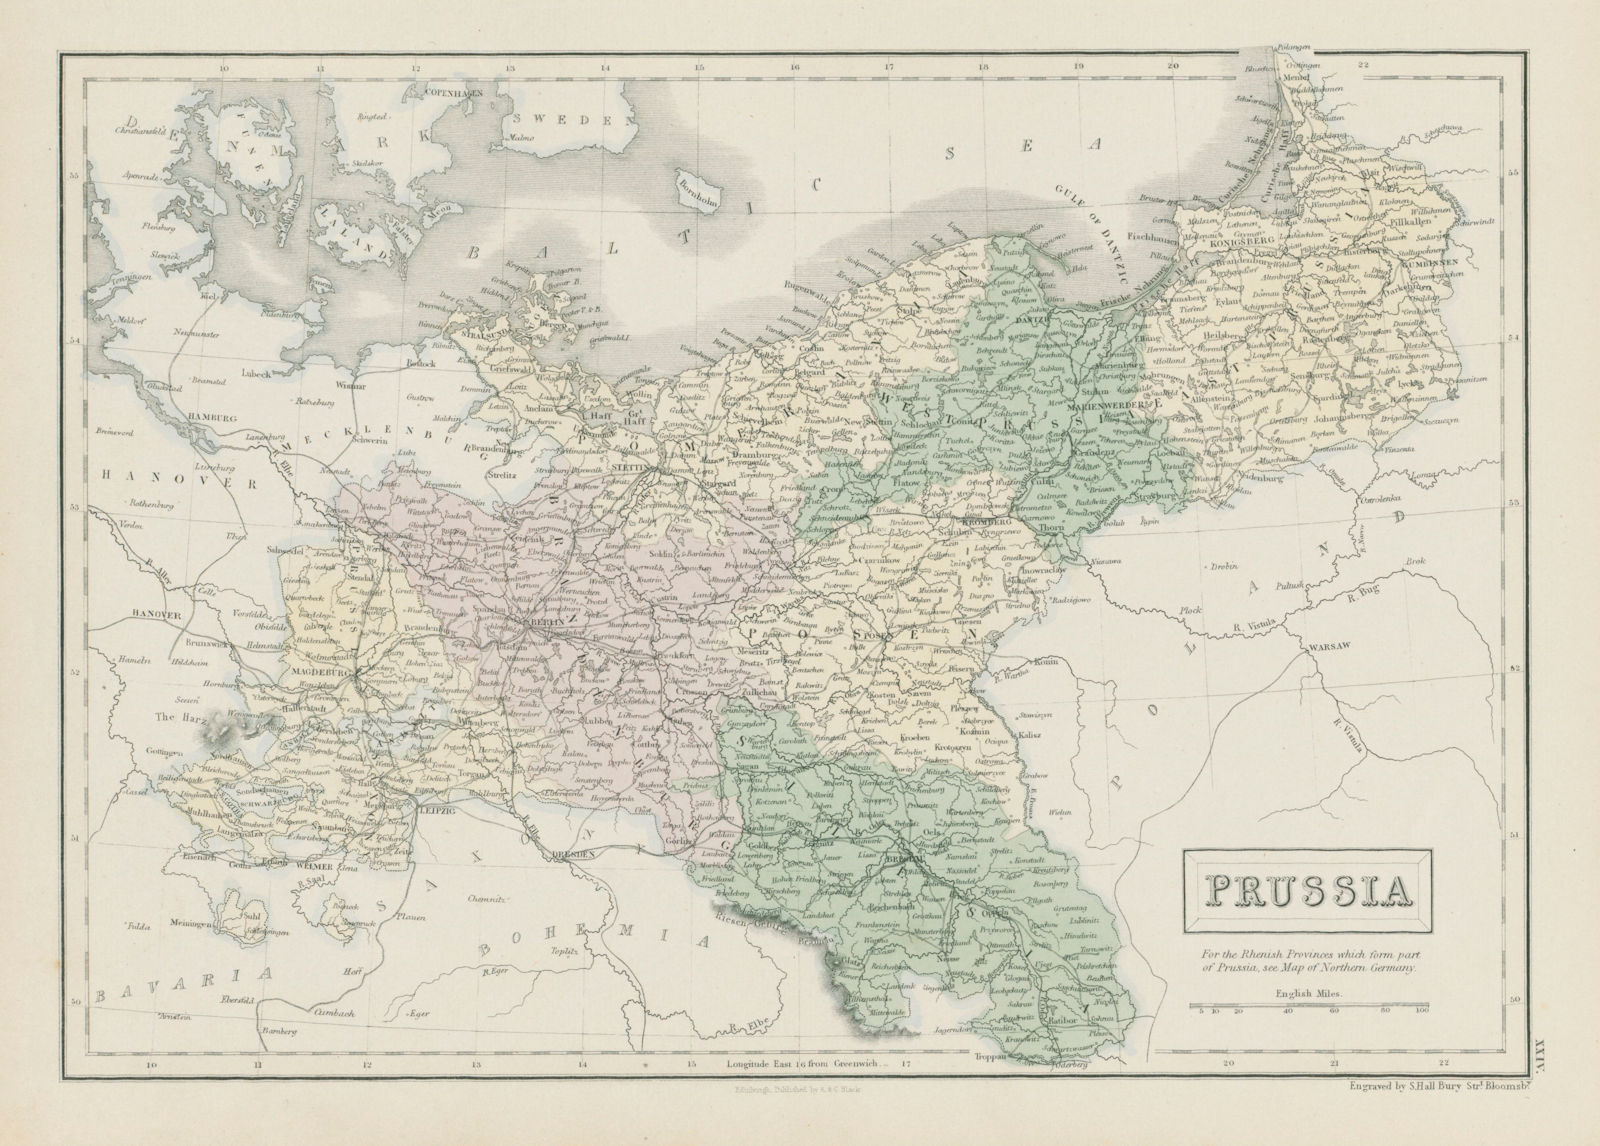 Associate Product Prussia. Pomerania Poland Silesia Posen Brandenburg. SIDNEY HALL 1856 old map